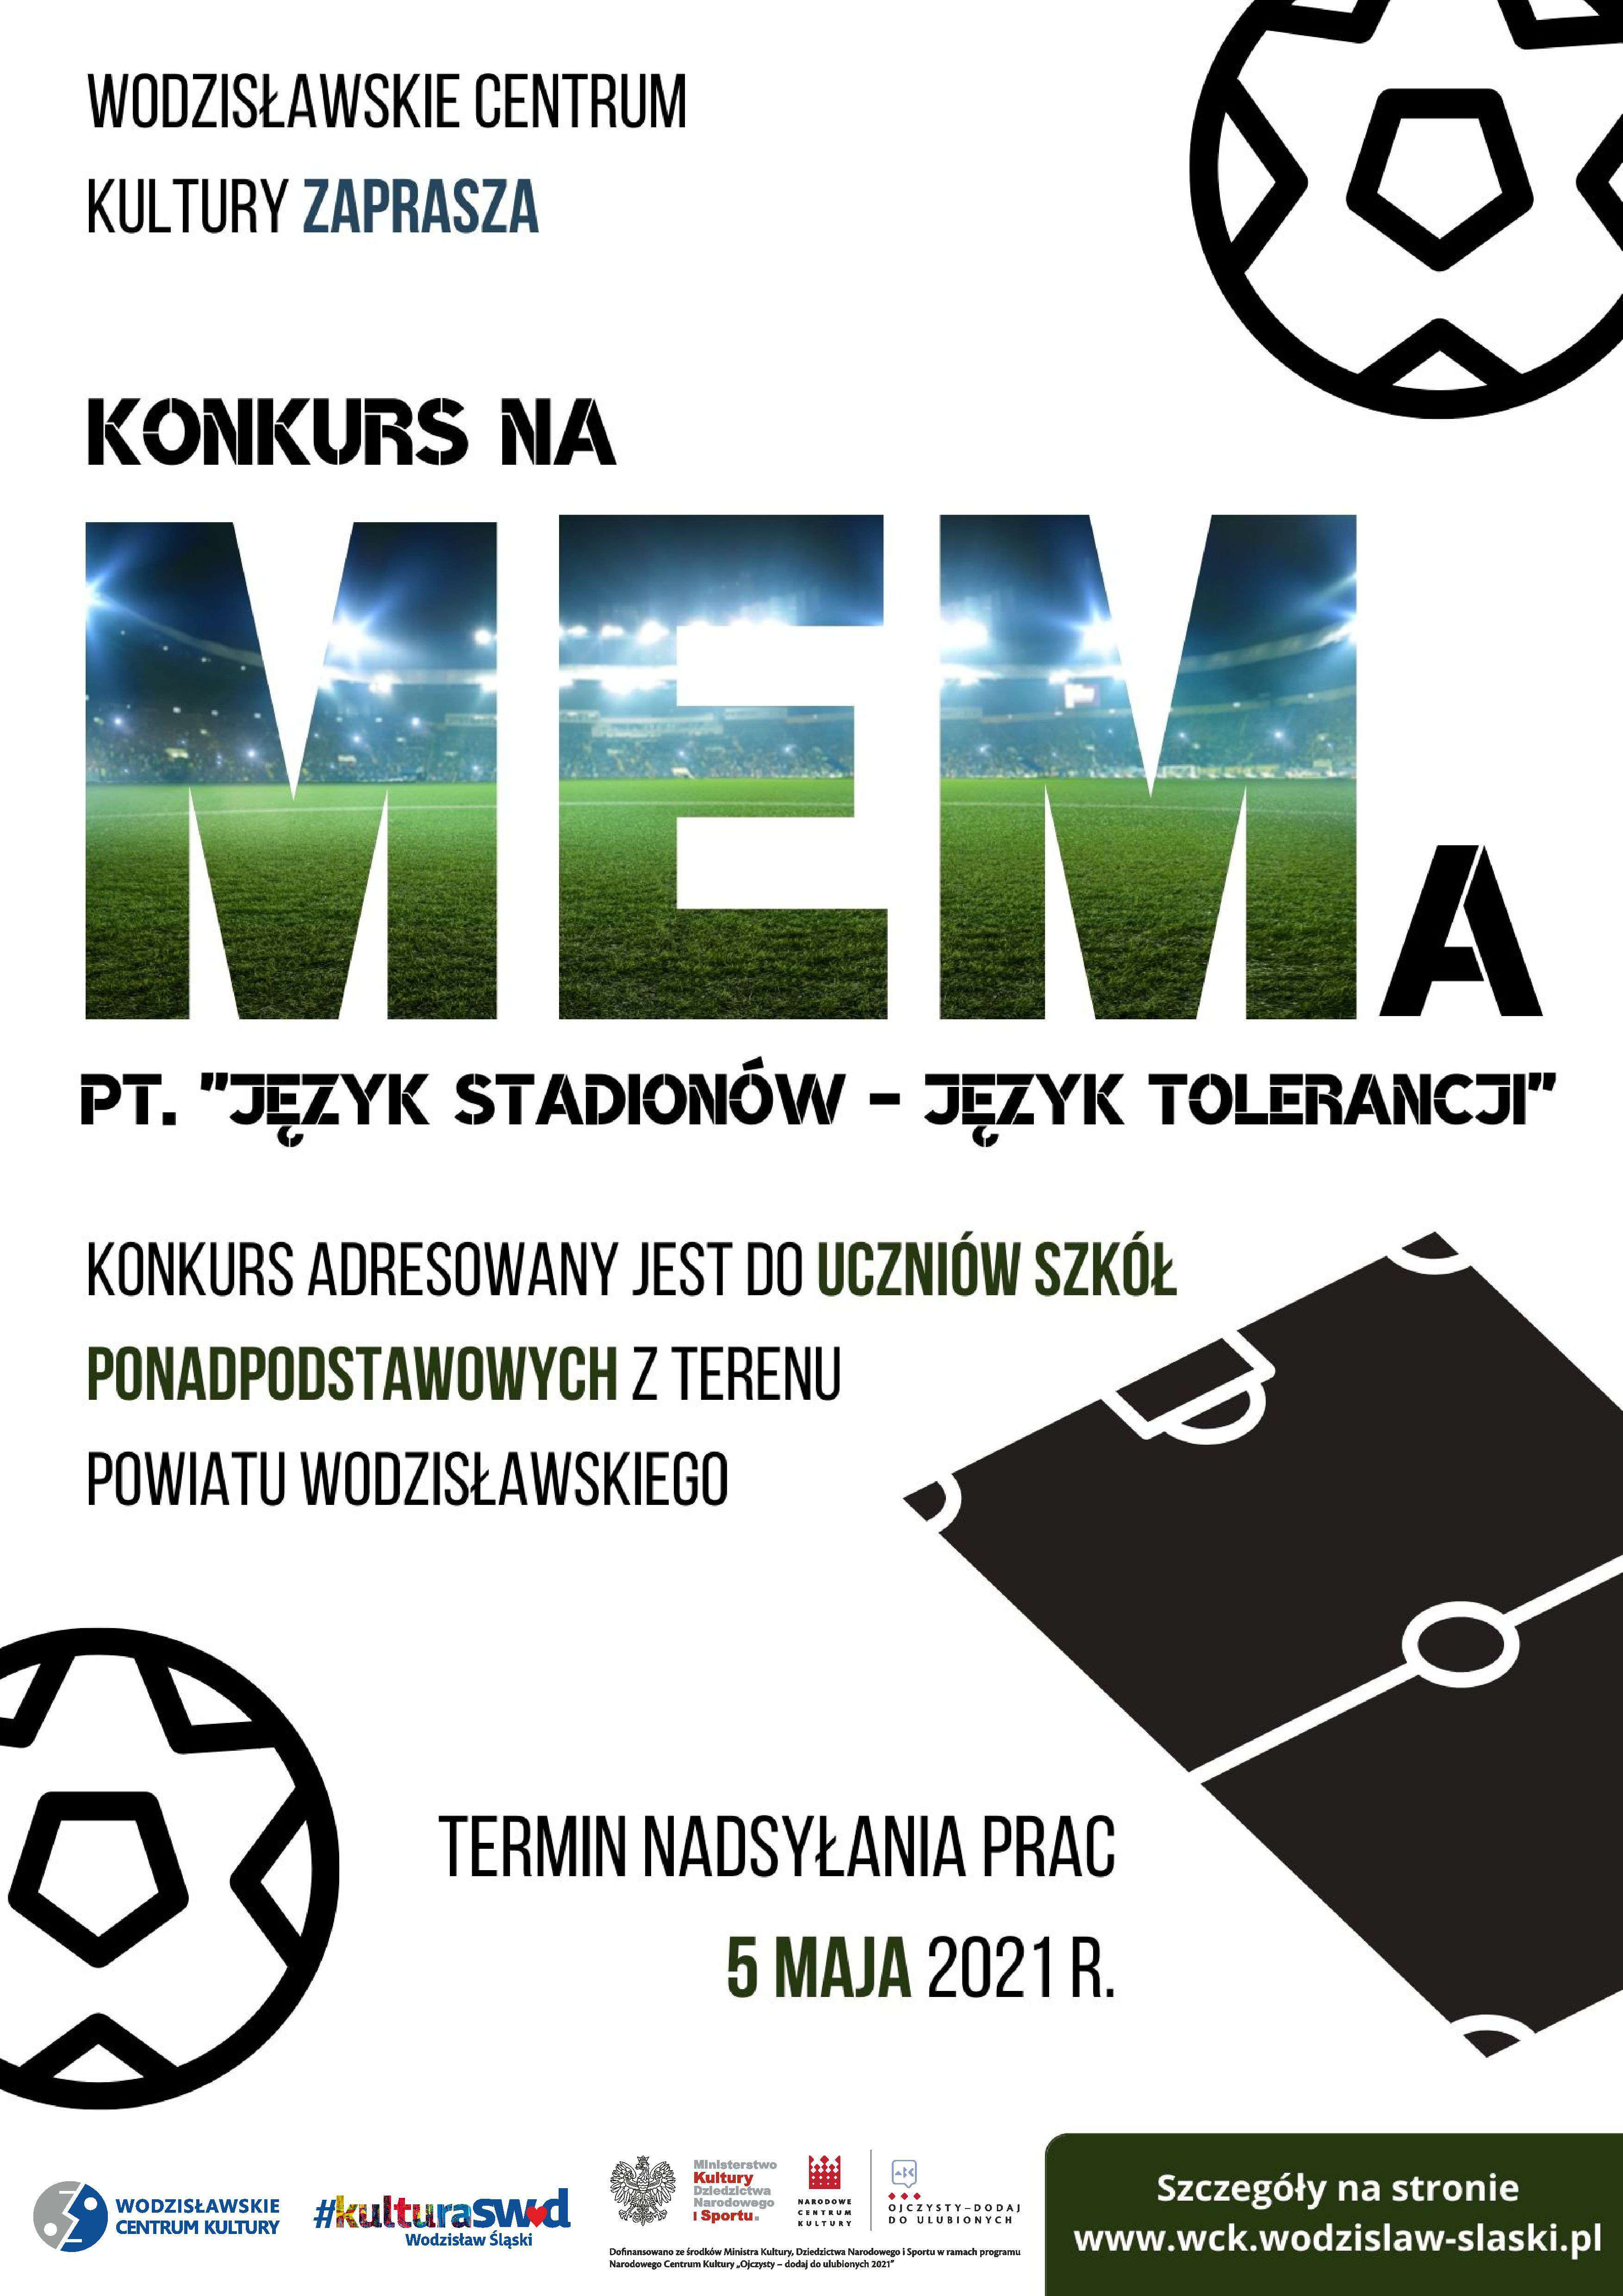 WCK Wodzisław Memy można przesyłać do 5 maja 